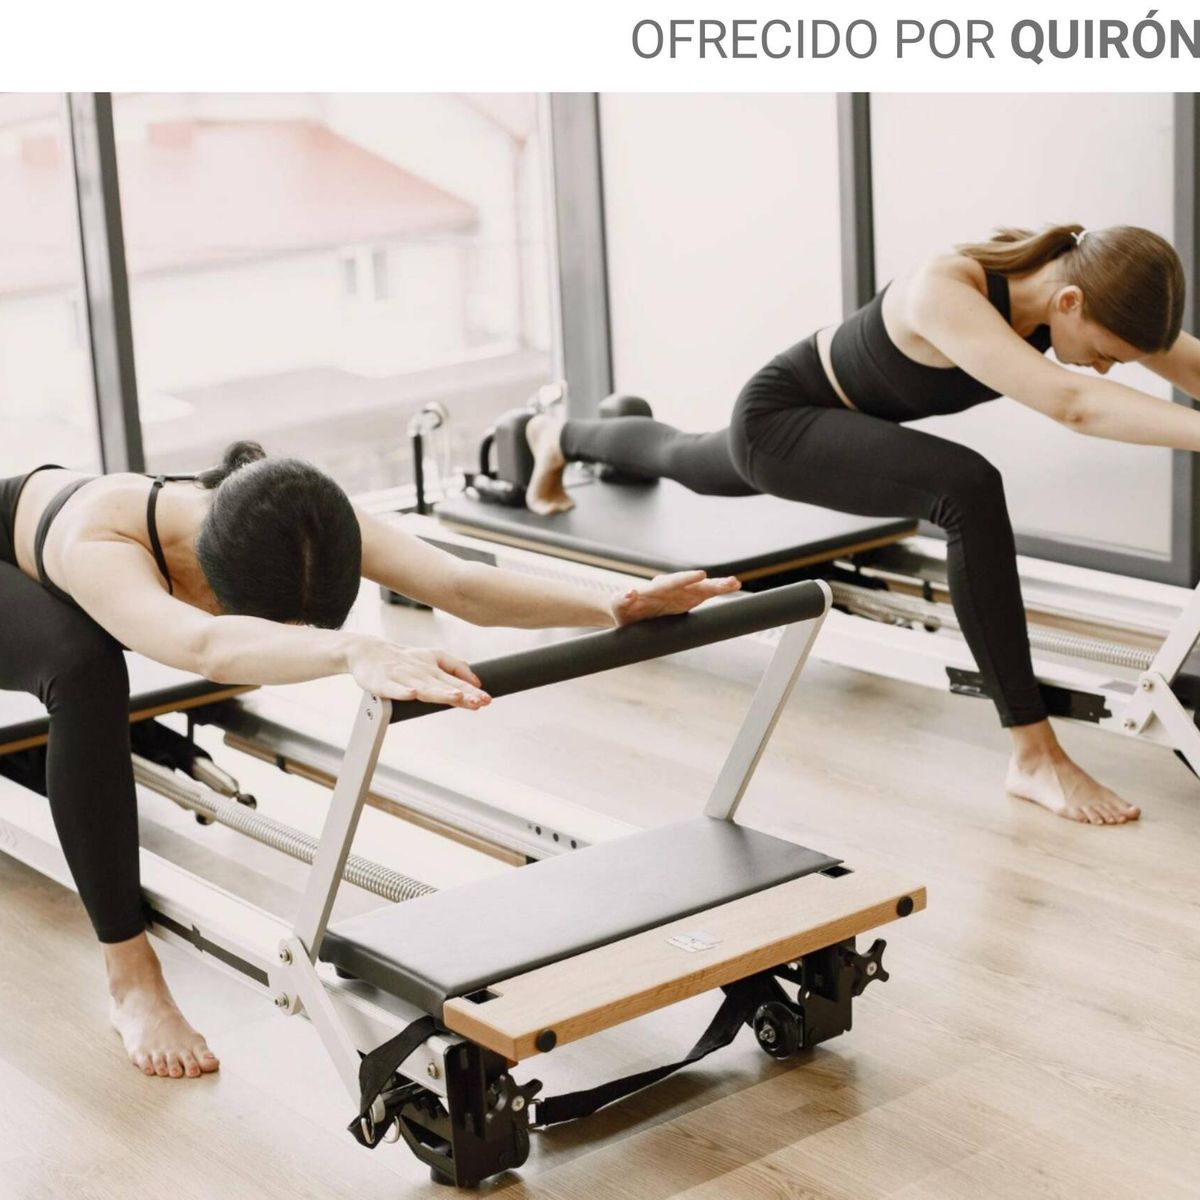 Ejercicio terapéutico:¿SIRVE DE ALGO LA FAJA LUMBAR? - TERAPILATES - Centro  de Pilates y Fisioterapia en BilbaoTERAPILATES – Centro de Pilates y  Fisioterapia en Bilbao